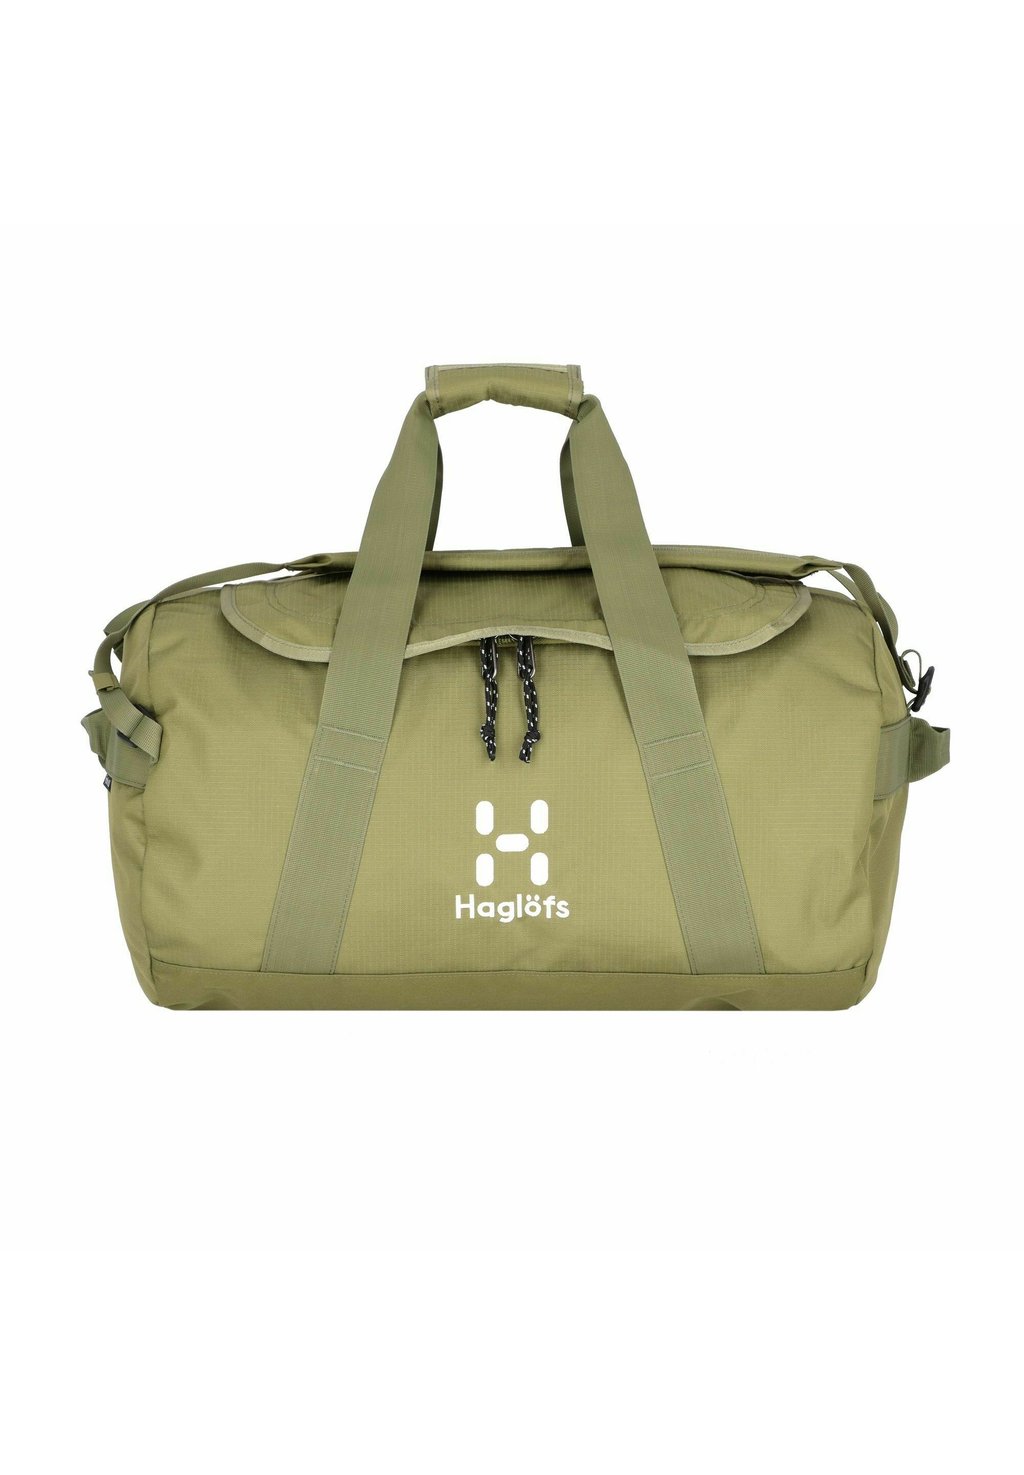 Спортивная сумка Fjatla 53 Cm Haglöfs, цвет olive green